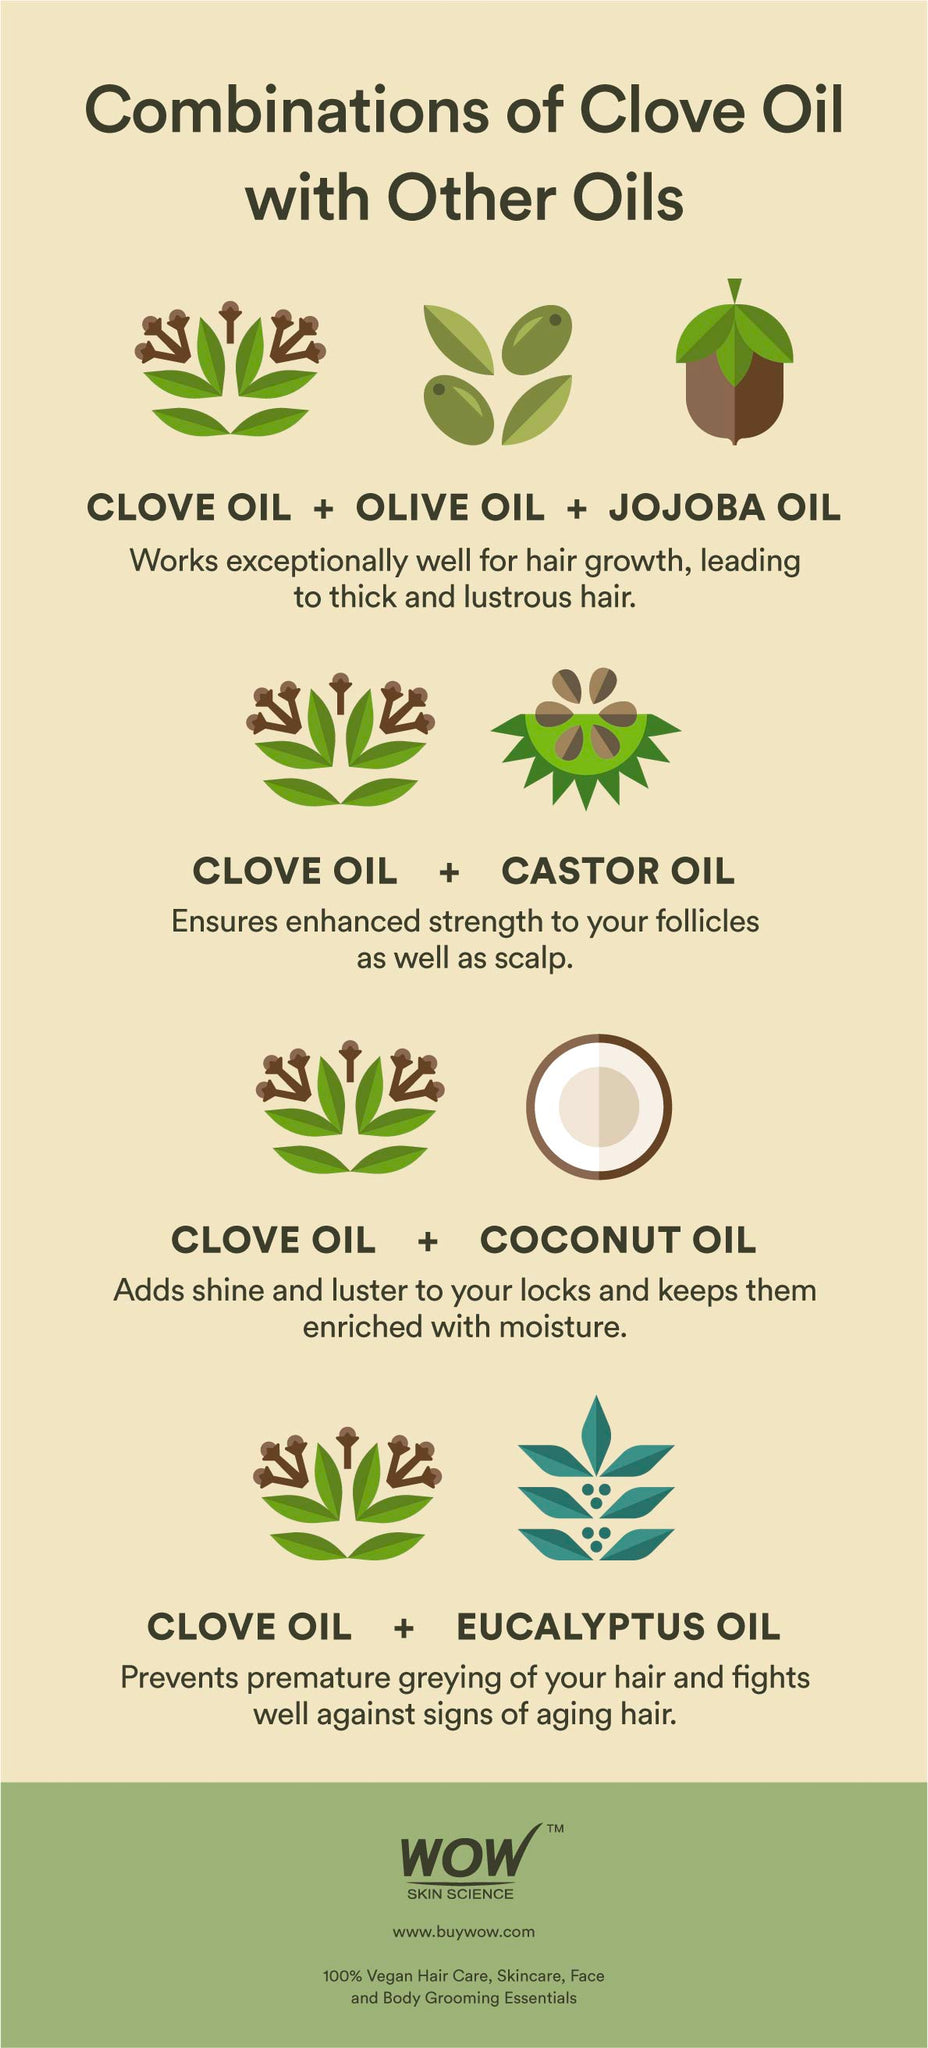 Clove Oil: Uses for Hair